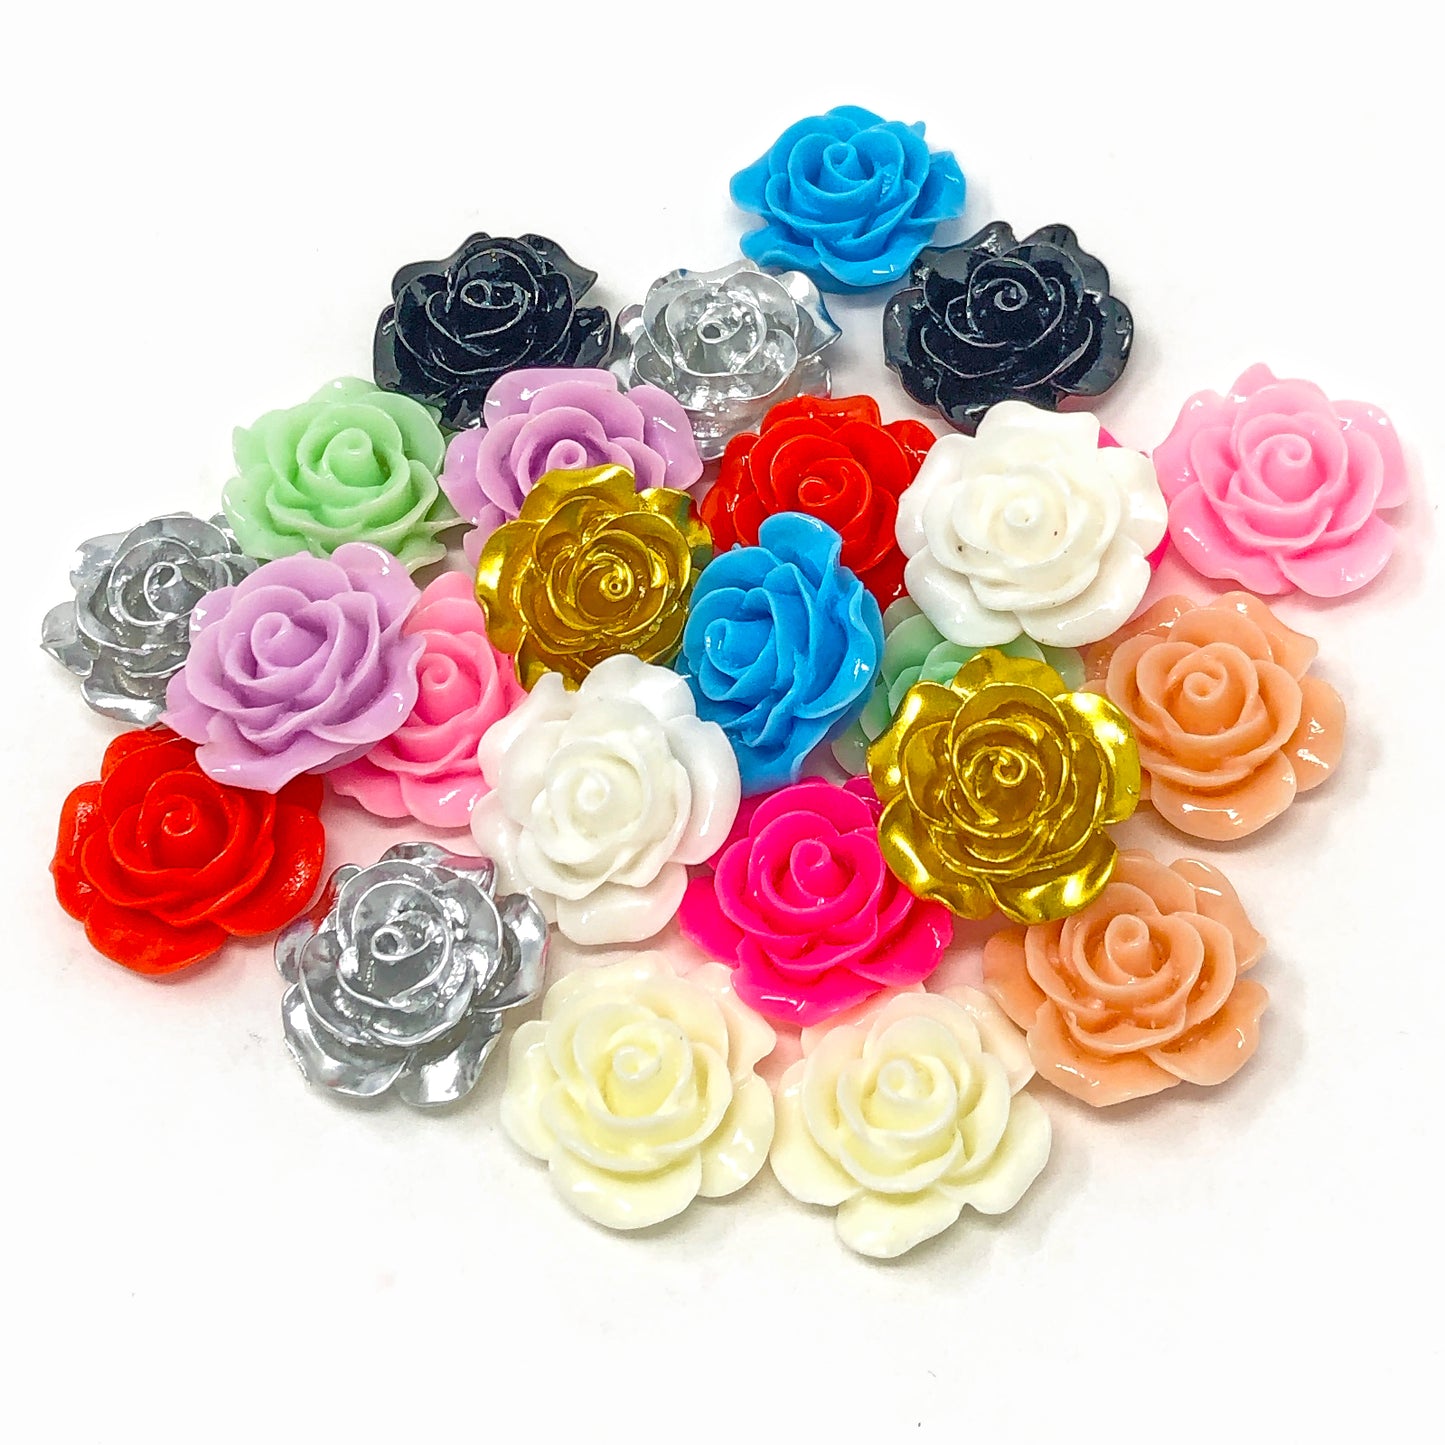 Multicoloured 20mm Resin Roses Flatbacks - Pack of 20